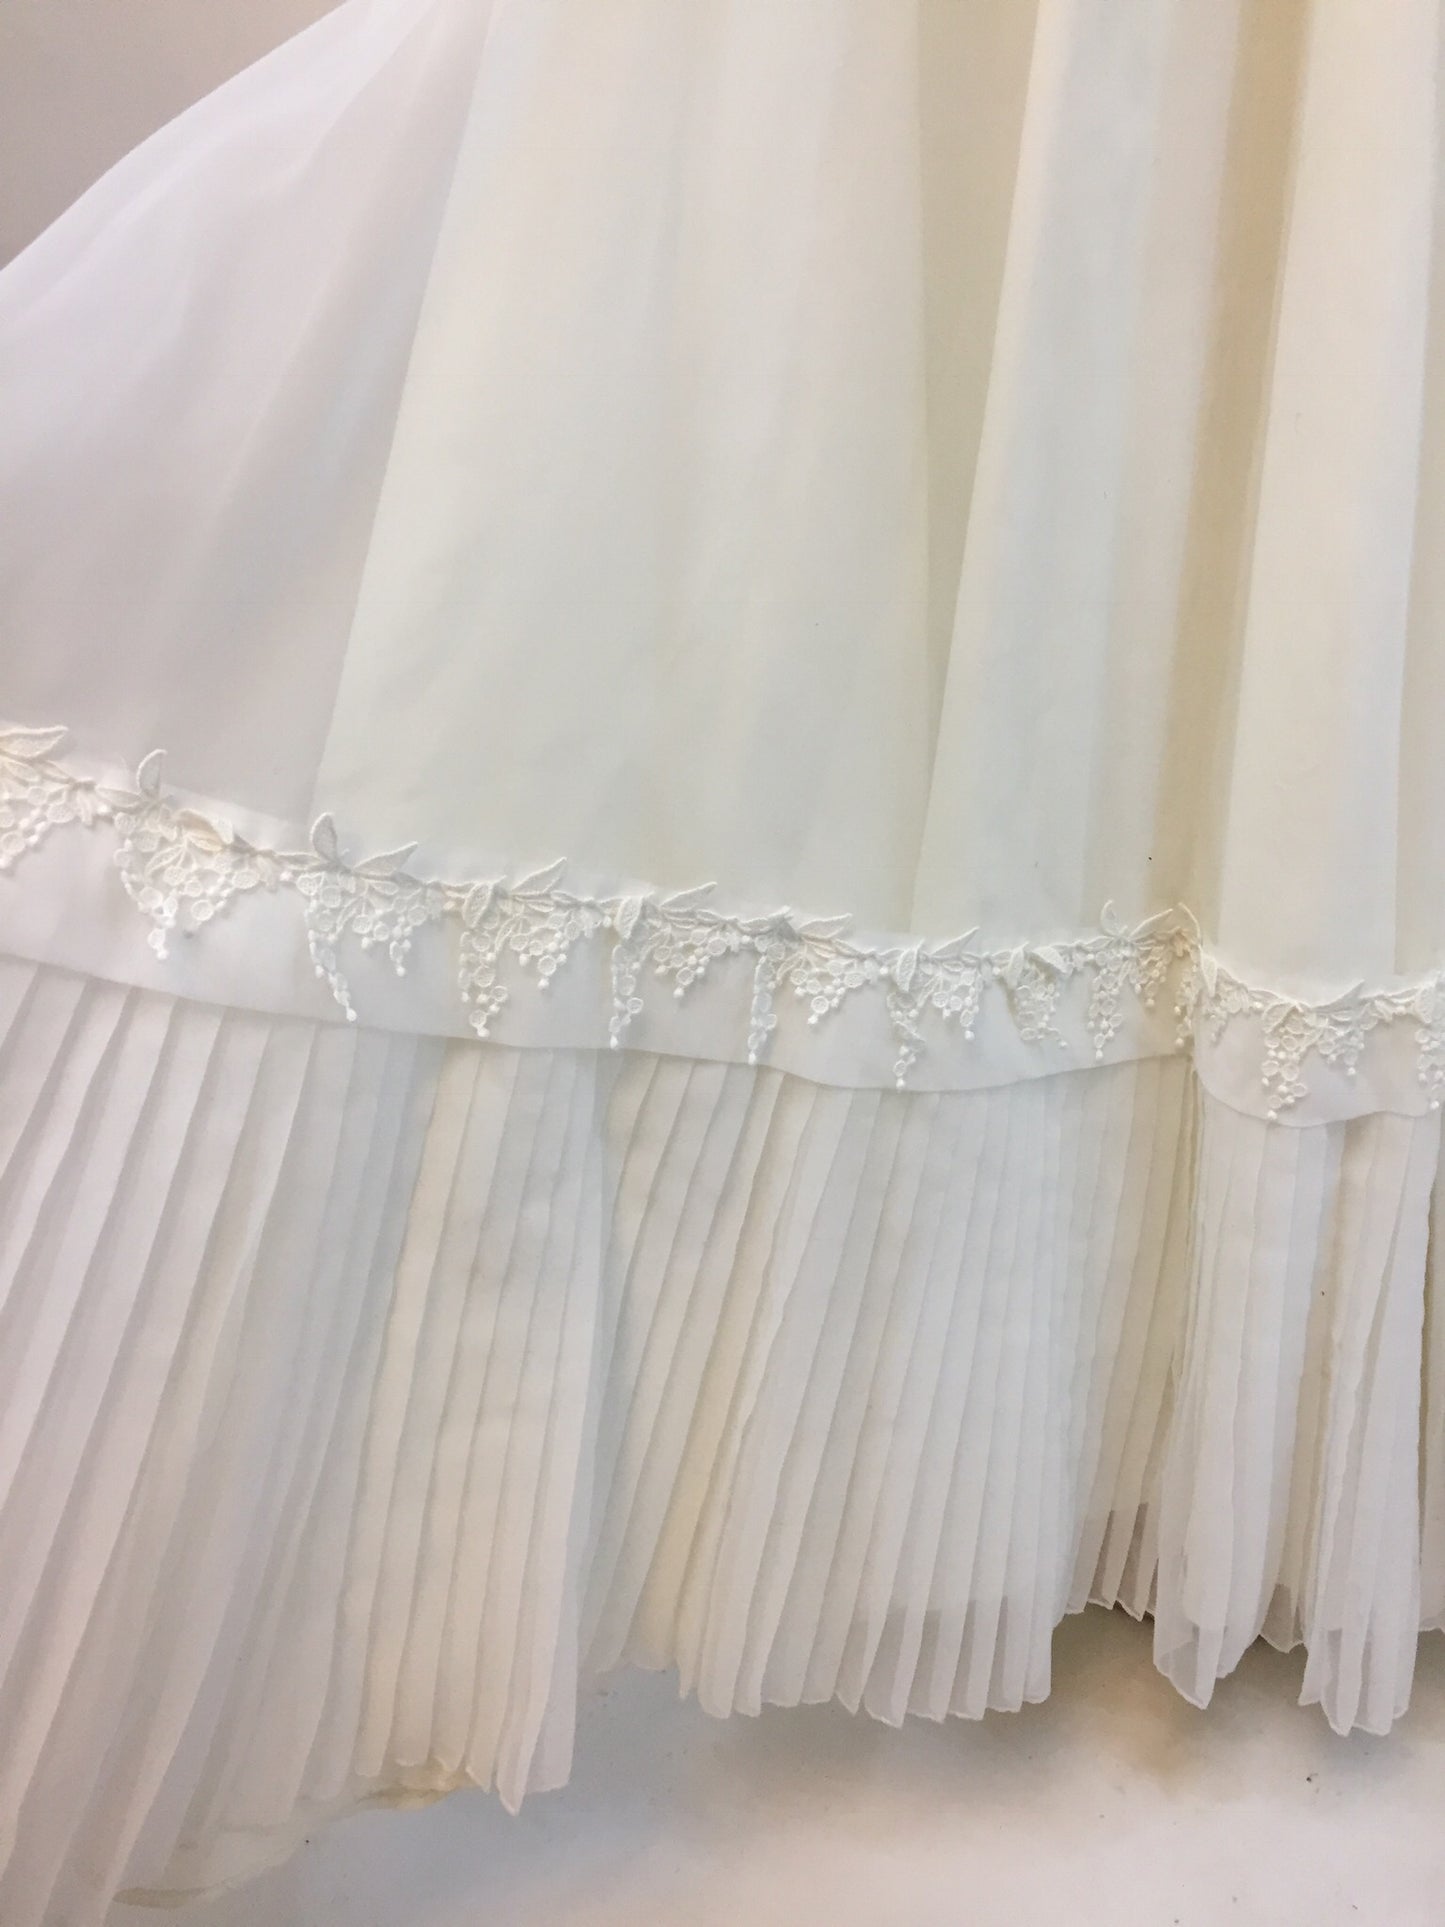 Wisteria ‘70s Boho Wedding Dress - Antiquaire Boutique 